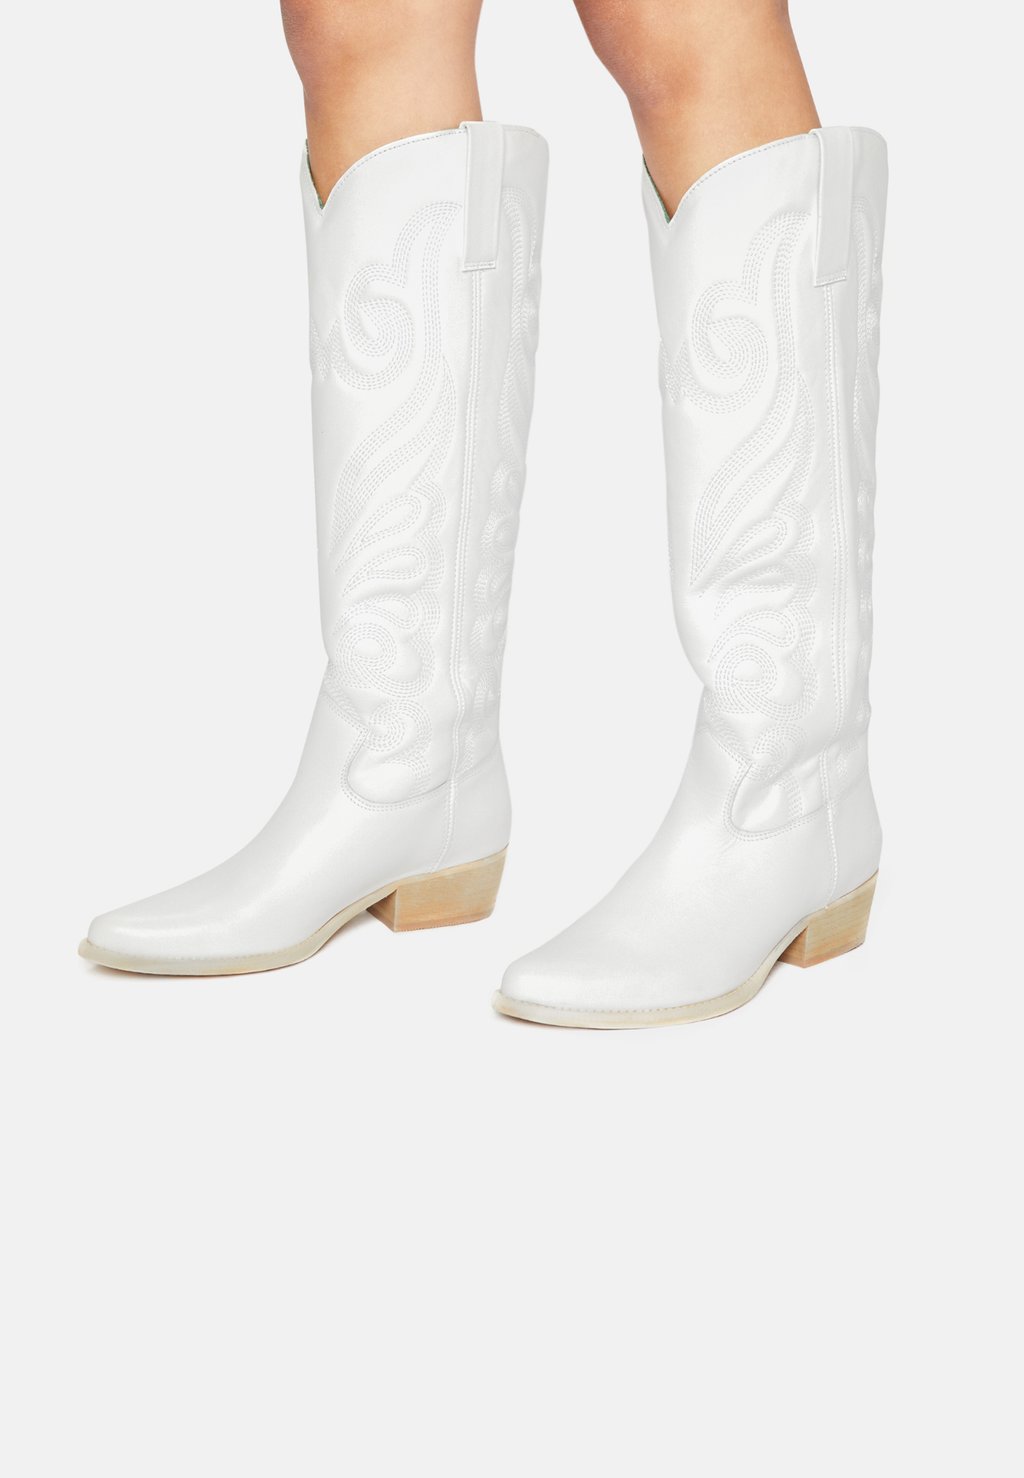 Техасские/байкерские ботинки Felmini, белые